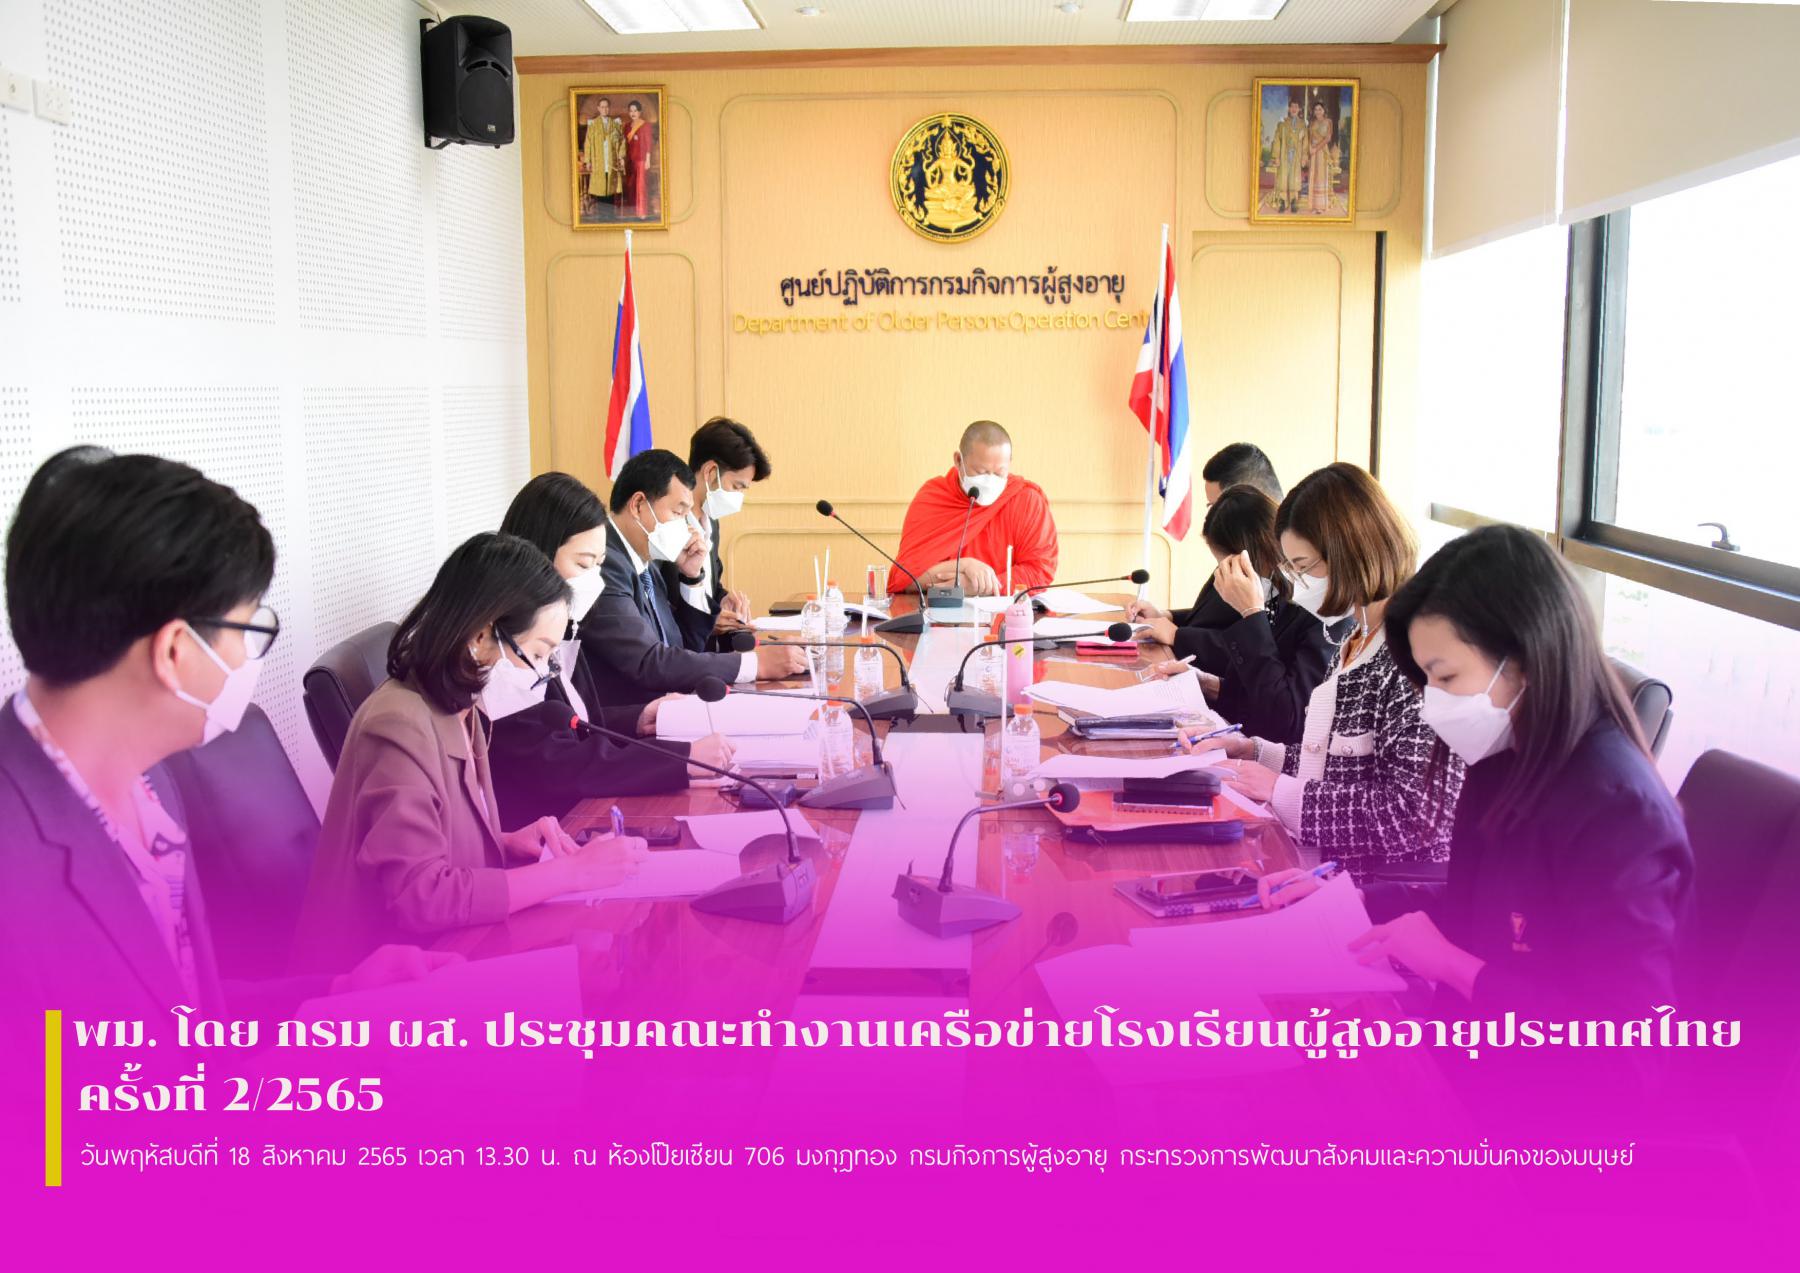 พม. โดย กรม ผส. ประชุมคณะทำงานเครือข่ายโรงเรียนผู้สูงอายุประเทศไทย ครั้งที่ 2/2565